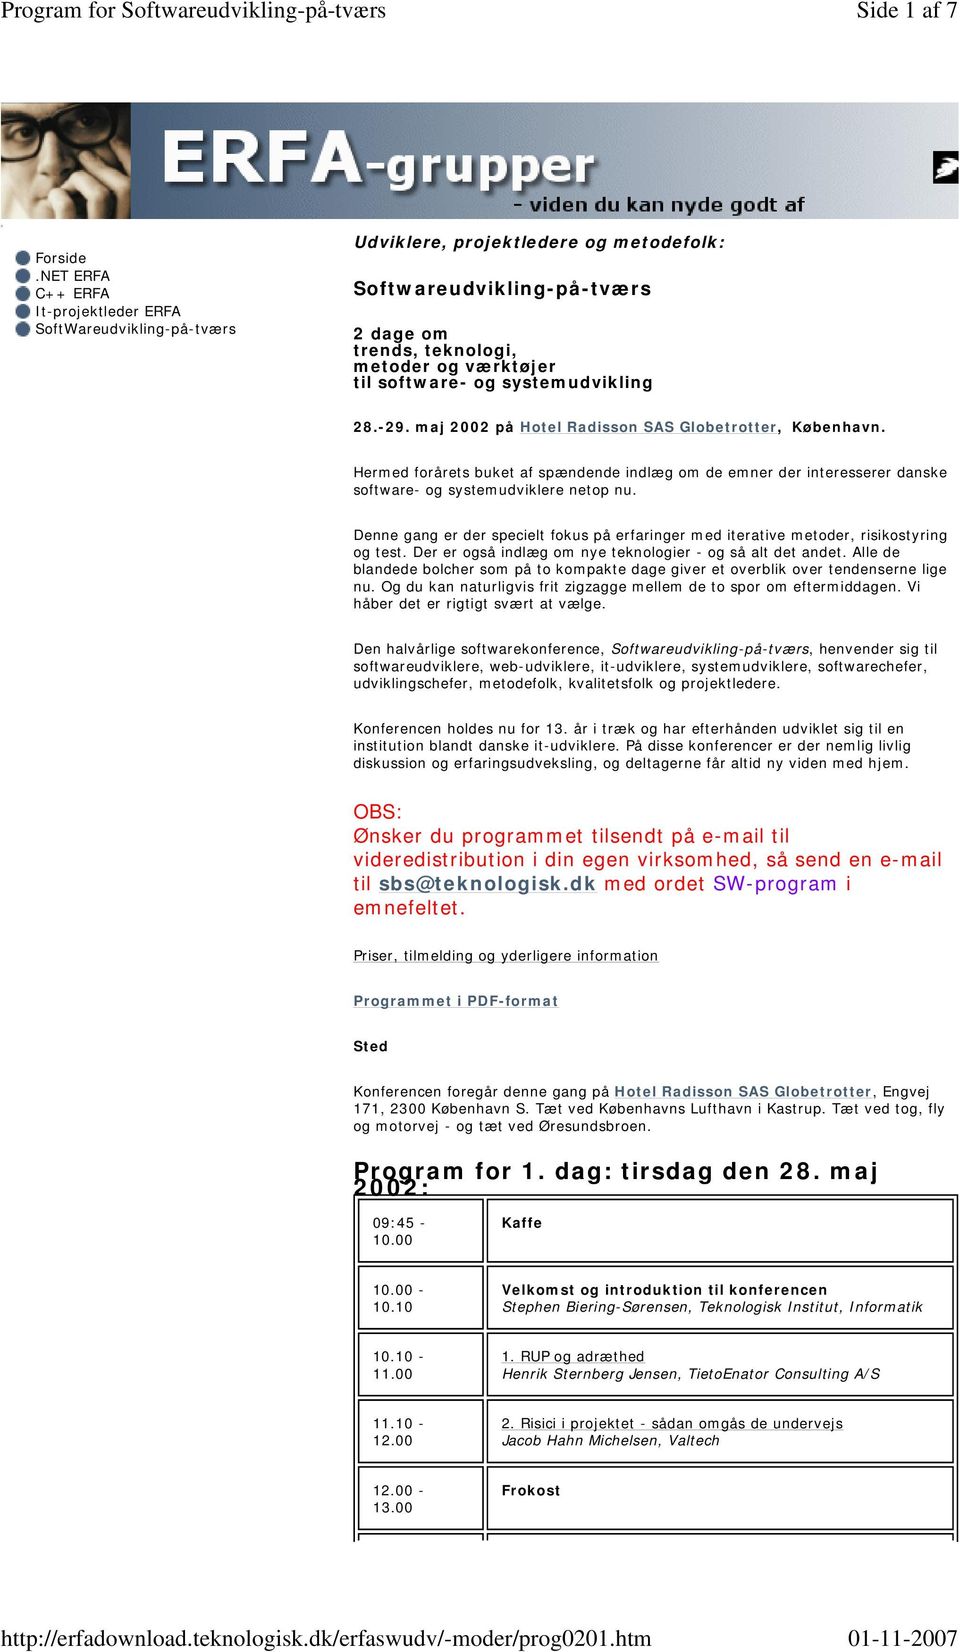 systemudvikling 28.-29. maj 2002 på Hotel Radisson SAS Globetrotter, København. Hermed forårets buket af spændende indlæg om de emner der interesserer danske software- og systemudviklere netop nu.